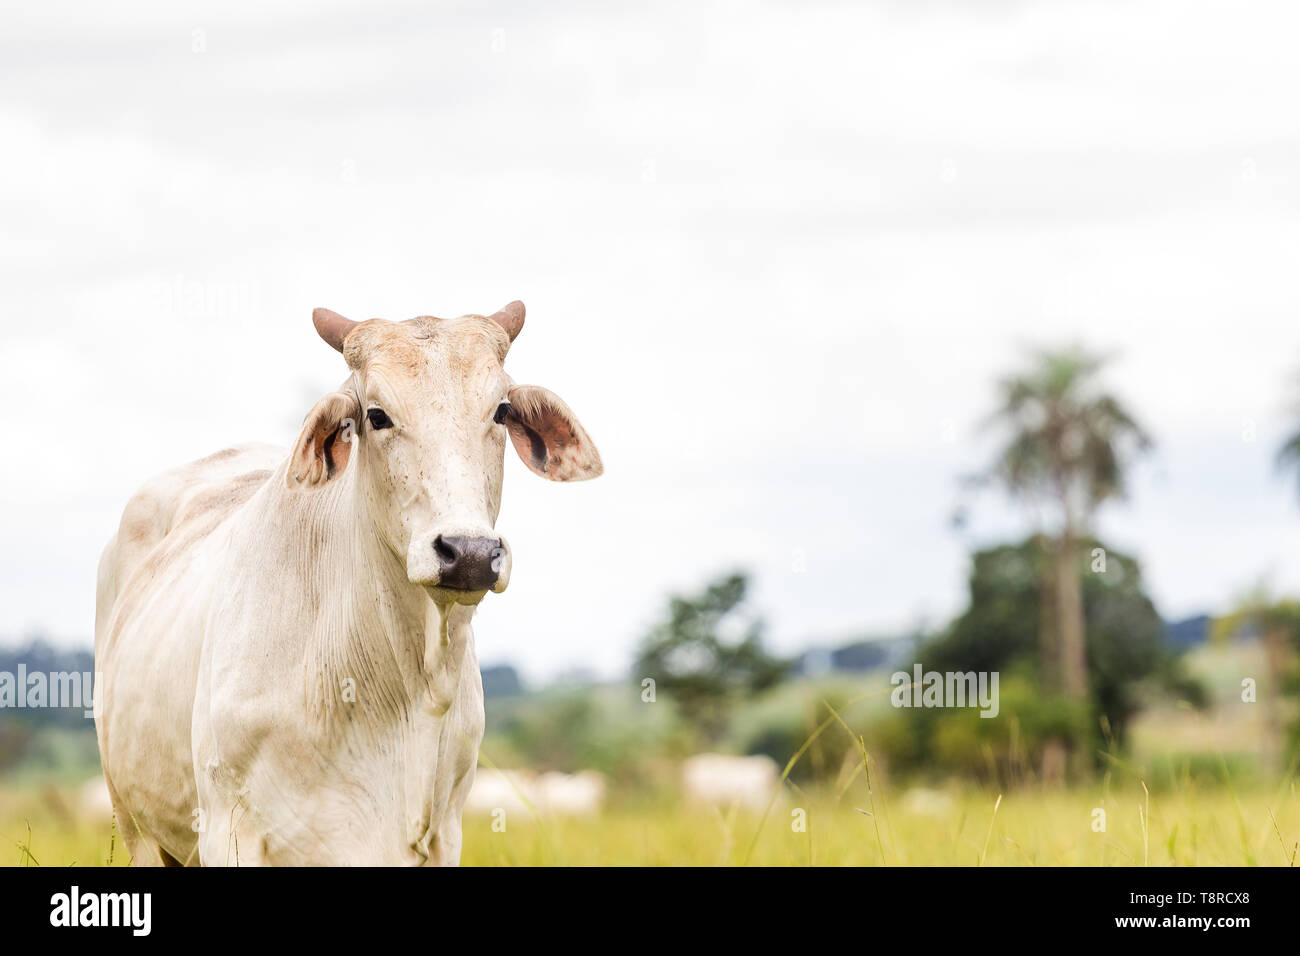 Eine Nelore Rinder auf dem Bauernhof gesehen. Die Viehzucht hat eine große Bedeutung in den brasilianischen Ausfuhren, neben der Lieferung der Inlandsmarkt. Es ist eine wirtschaftliche Tätigkeit in ländlichen Gebieten entwickelt. Landwirtschaft in Brasilien ist eine der wichtigsten Grundlagen der Wirtschaft des Landes. Die Landwirtschaft ist eine Tätigkeit, die Teil des primären Sektors, wo das Land kultiviert wird und für den Lebensunterhalt, die Ausfuhr oder den Handel geerntet. Stockfoto